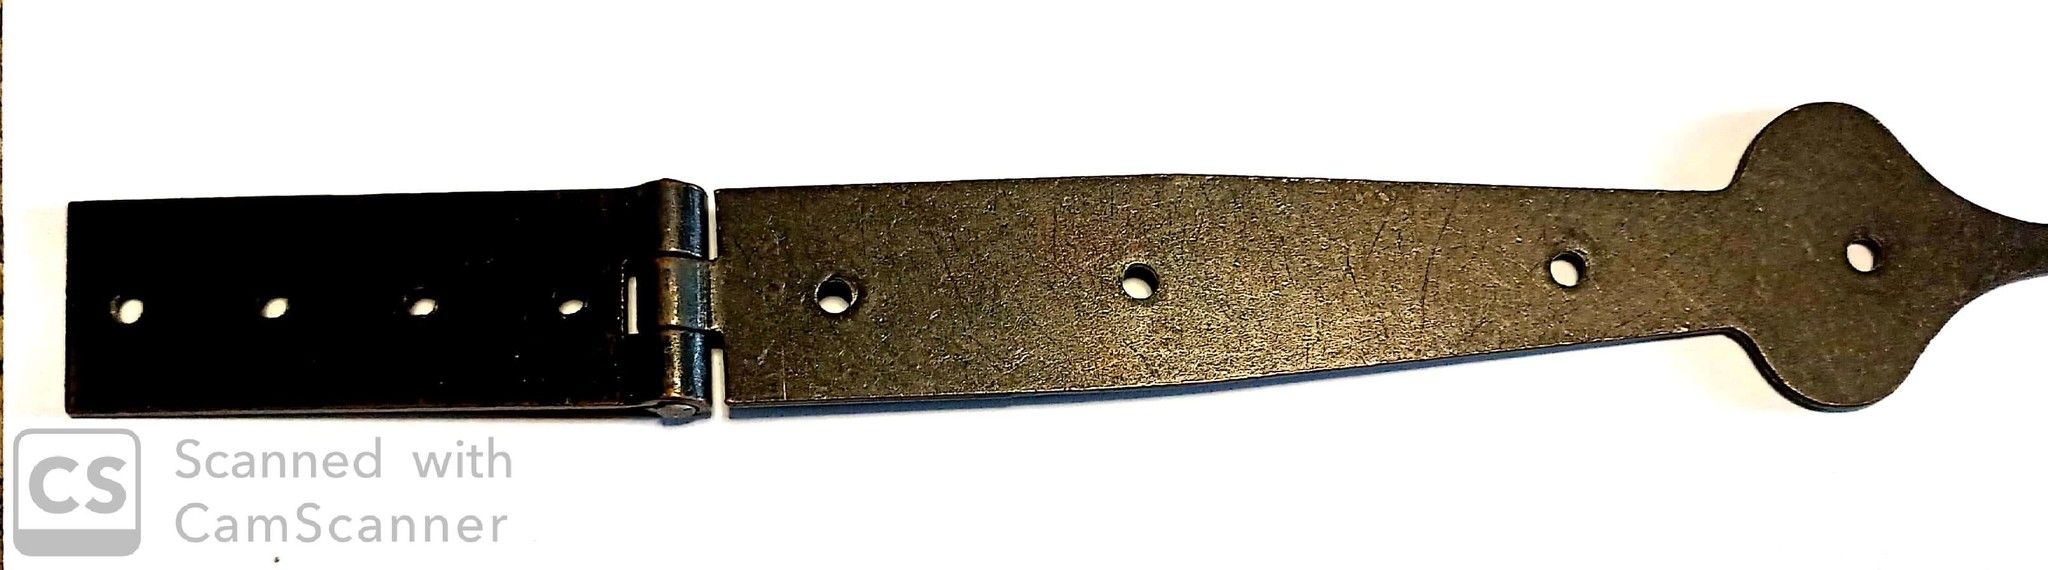 Cerniera mod. LANCIA in ferro brunito con snodo centrato mm 280